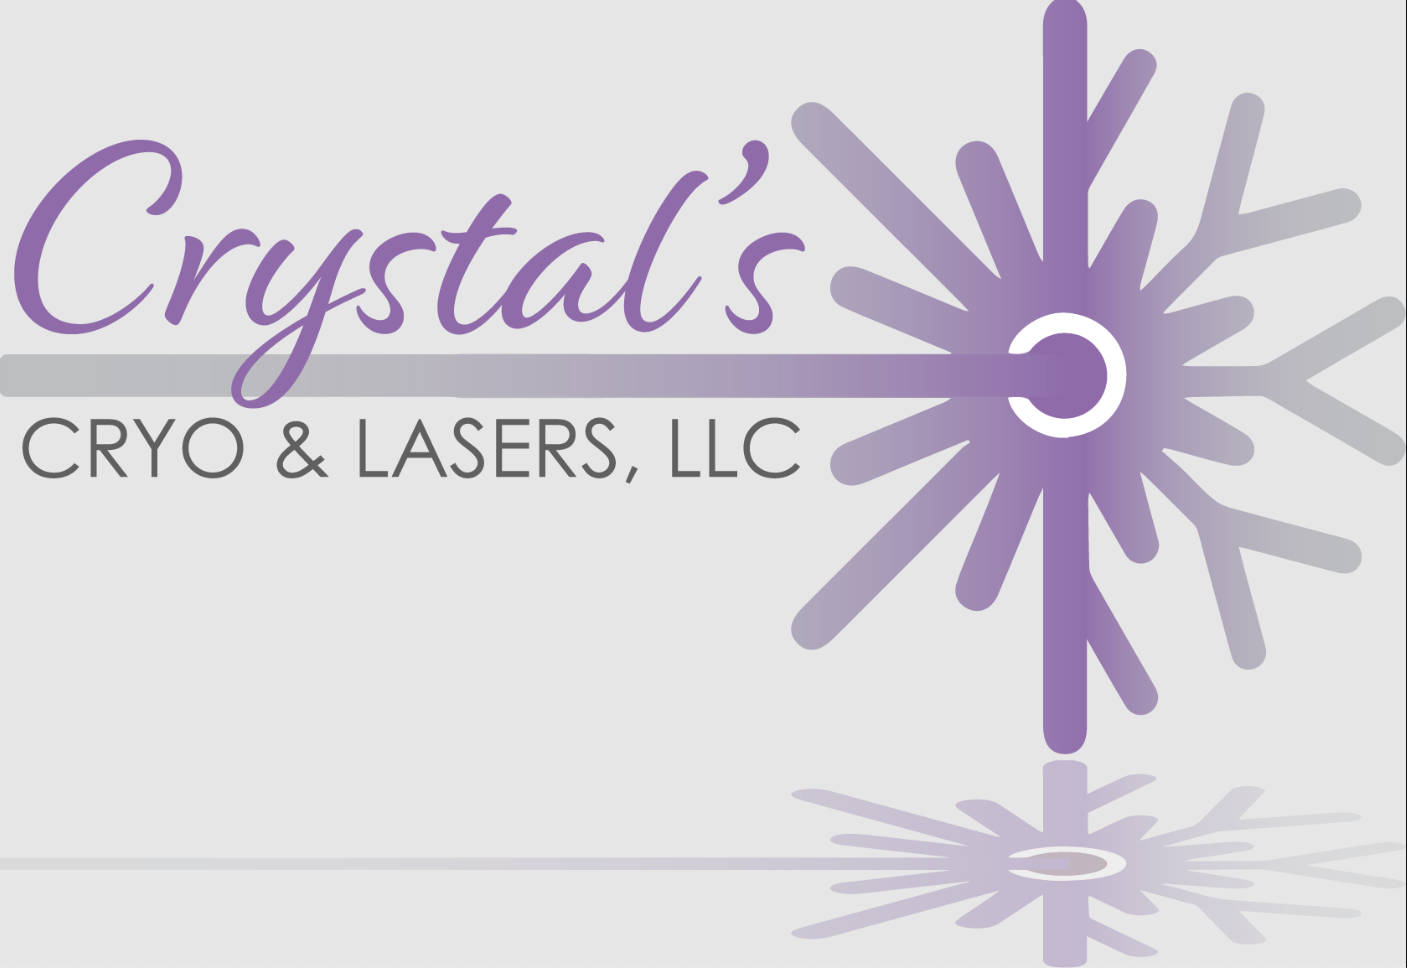 Crystal's Cryo & Lasers, LLC